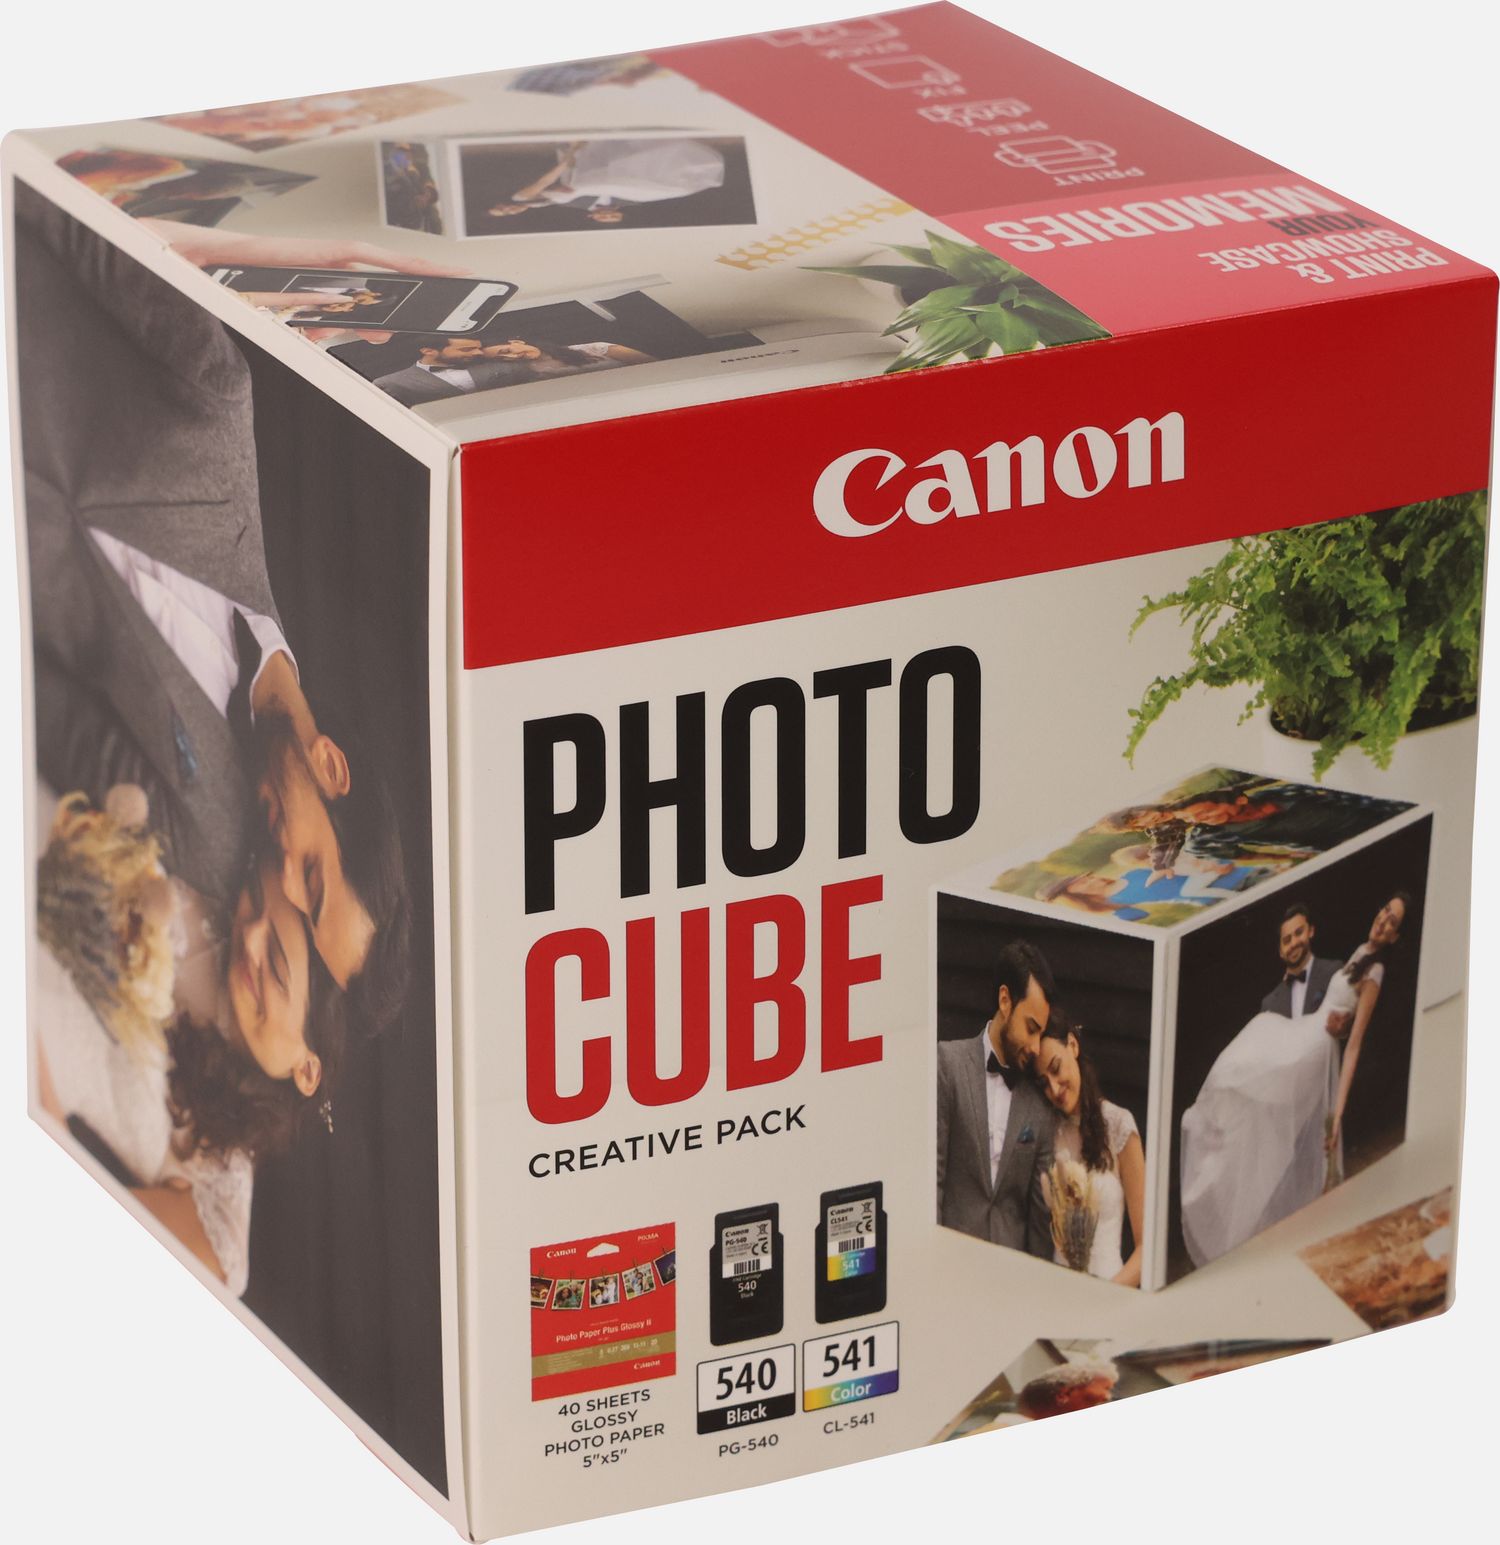 Image of Canon Photo Cube con cartucce Inkjet PG-540 + CL-541 e carta fotografica lucida Plus Glossy II PP-201 5x5" (40 fogli) - Confezione multipla, Rosa